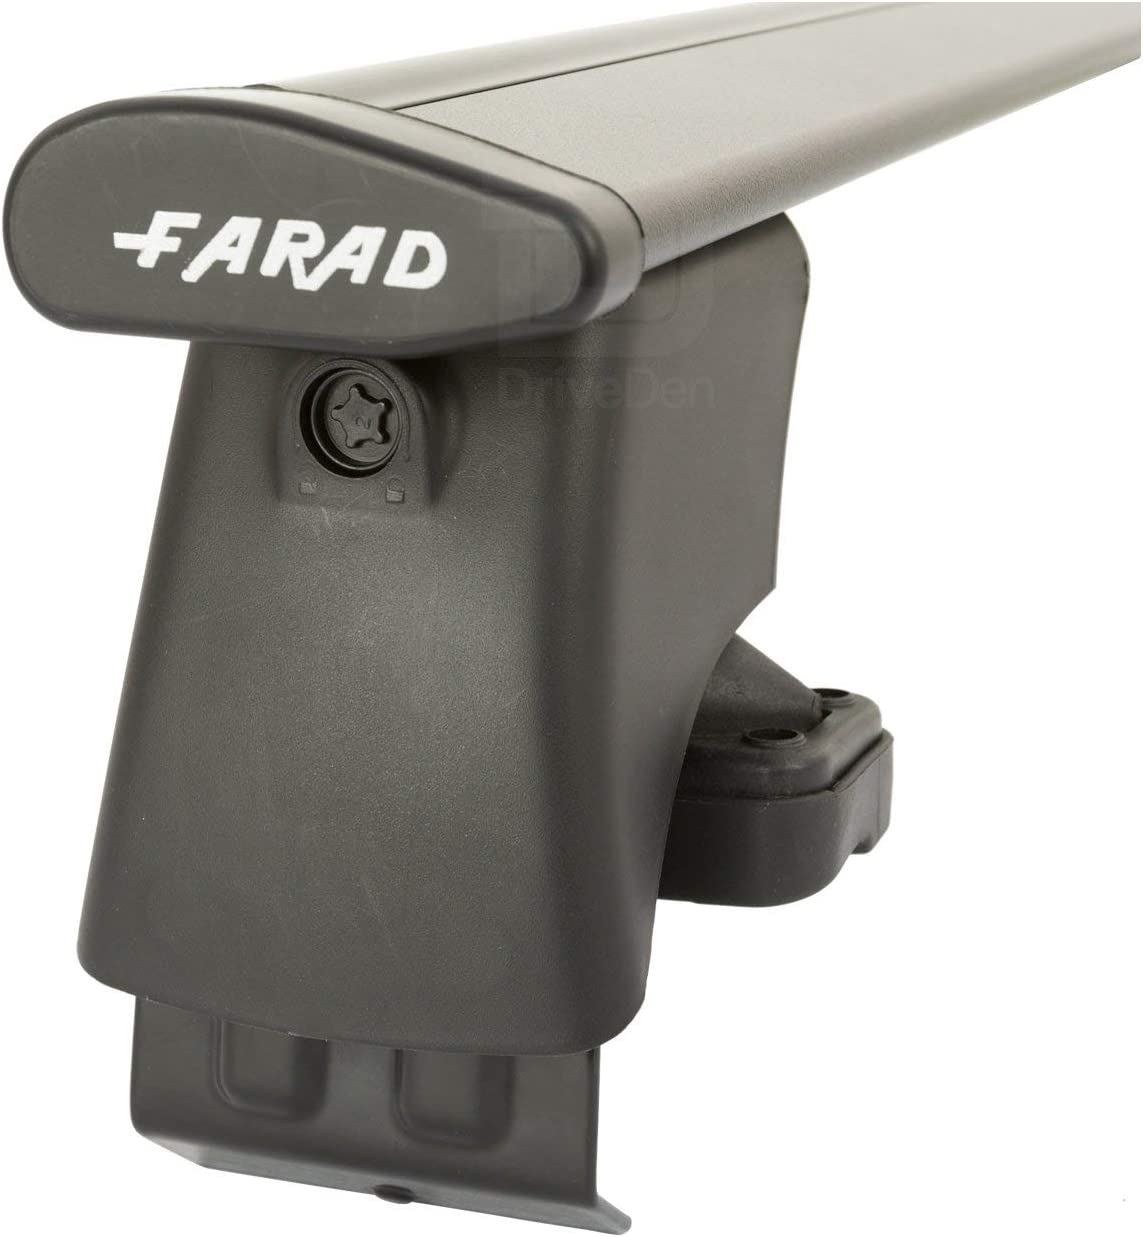 FARAD-Kit H2 per barre portatutto - Nissan Note 2013> (senza corrimano)